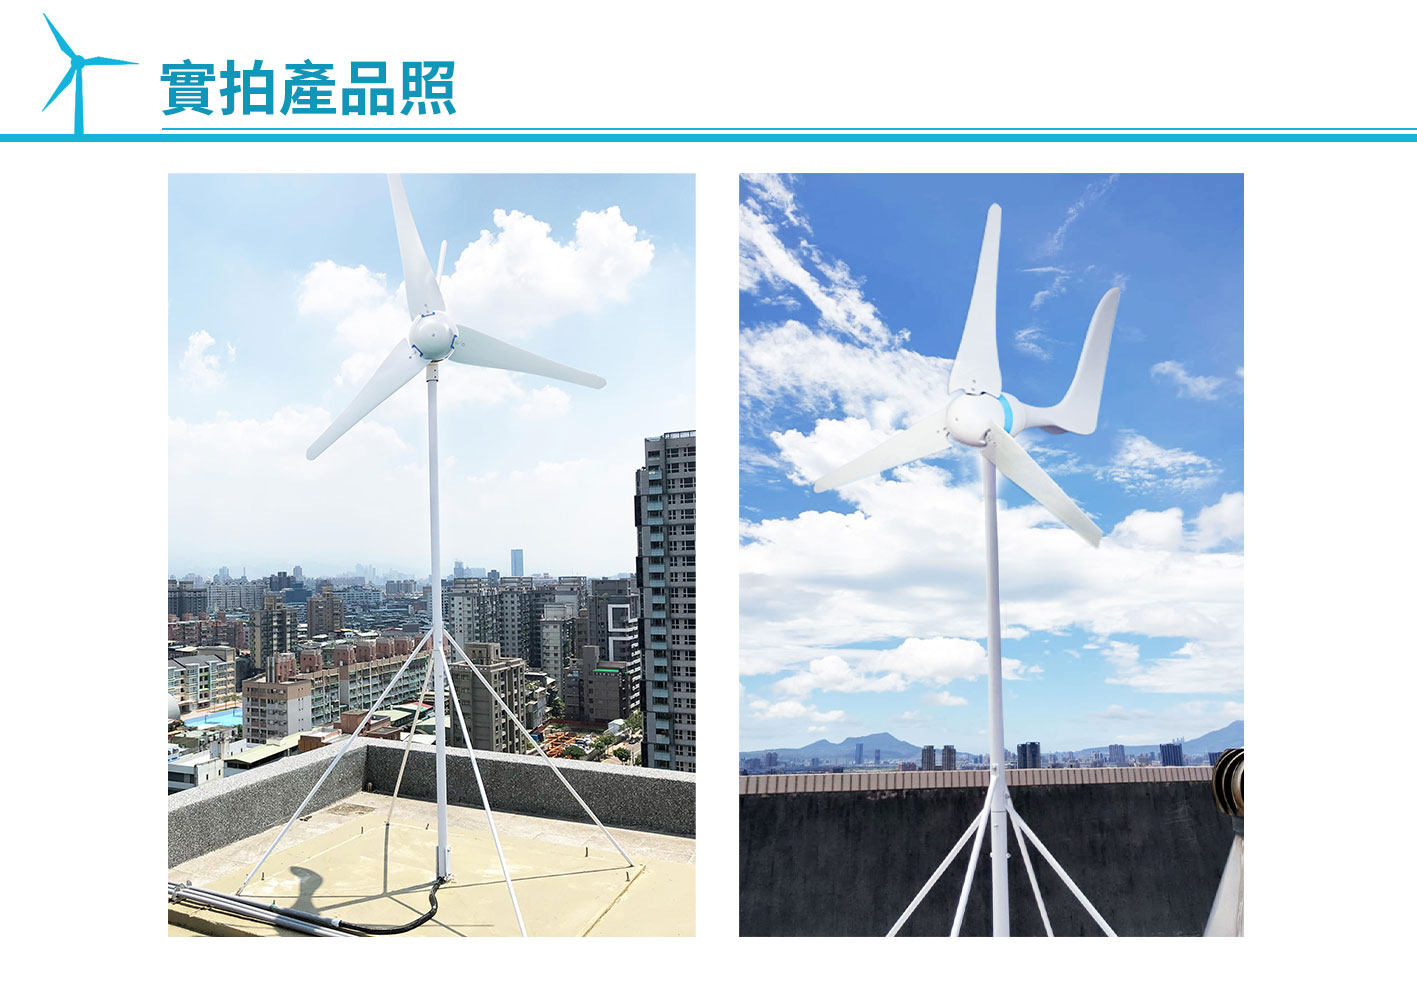 風力發電機,發電,Digisine,DB-600